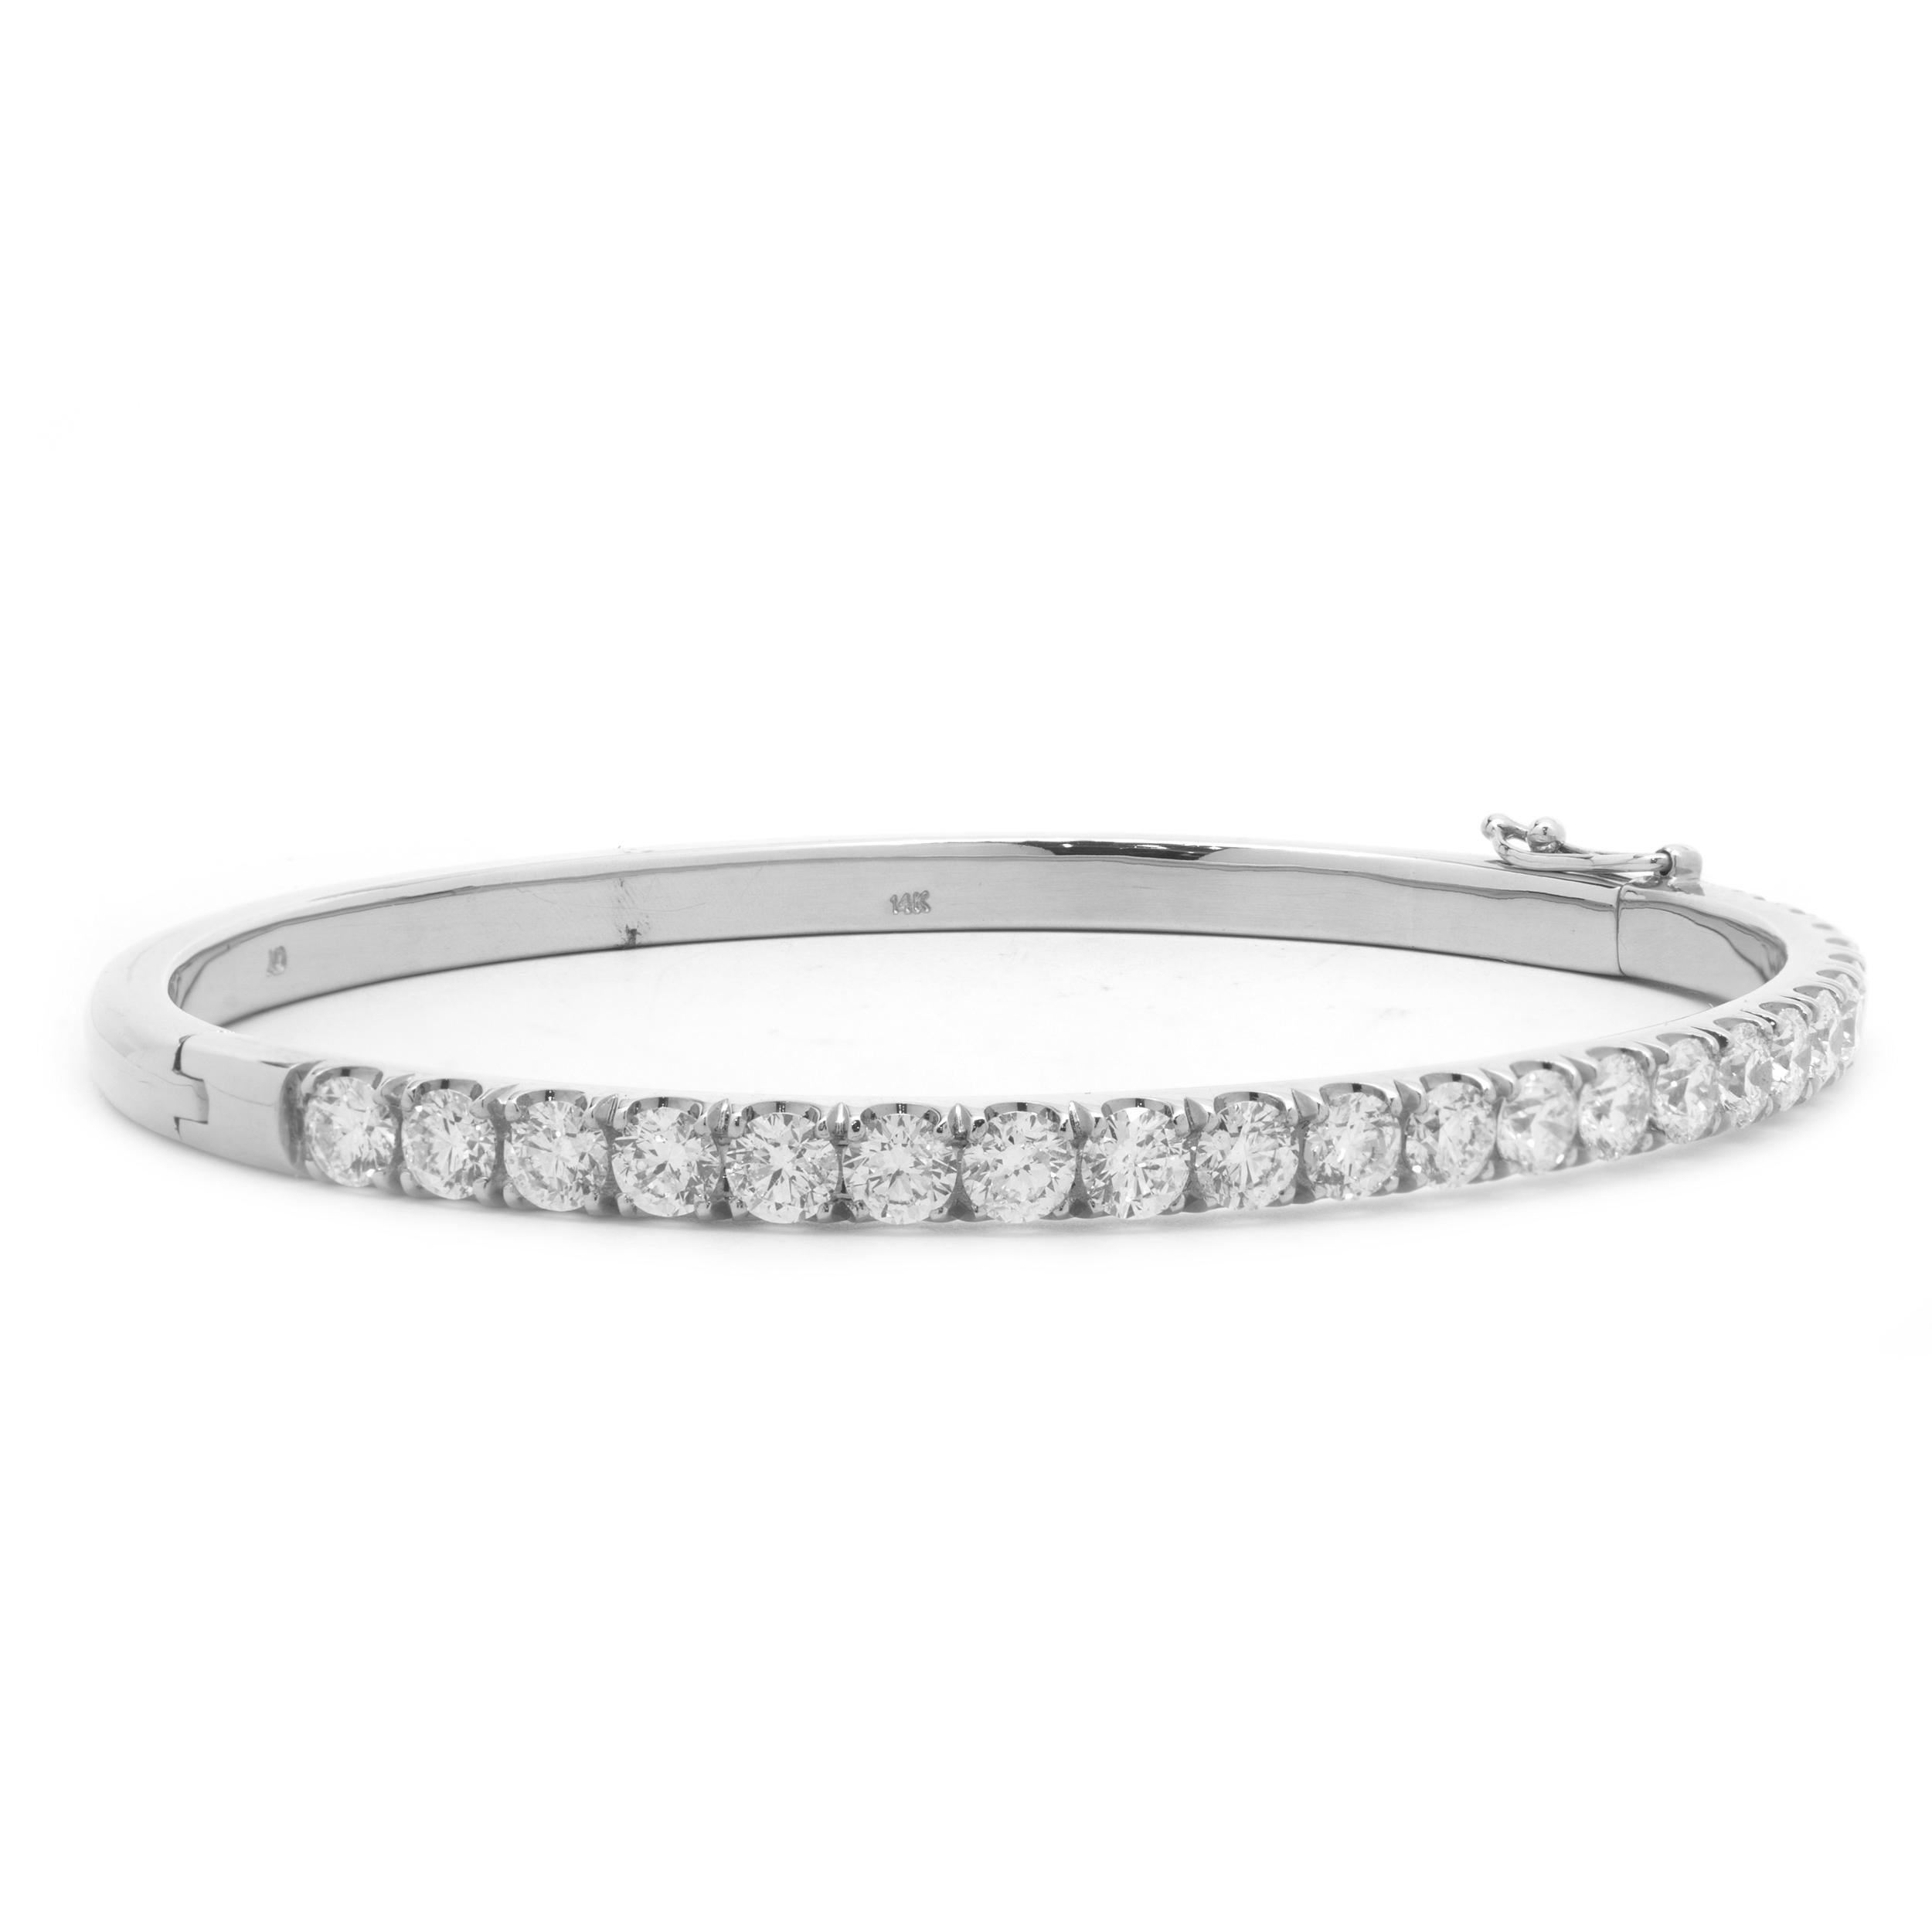 Matériau : or blanc 18K
Diamants : 21 diamants ronds taille brillant = 4,20cttw
Couleur : G
Clarté : VS2-SI1
Dimensions : le bracelet convient à un poignet de 6,5 pouces maximum
Poids : 17,21 grammes
